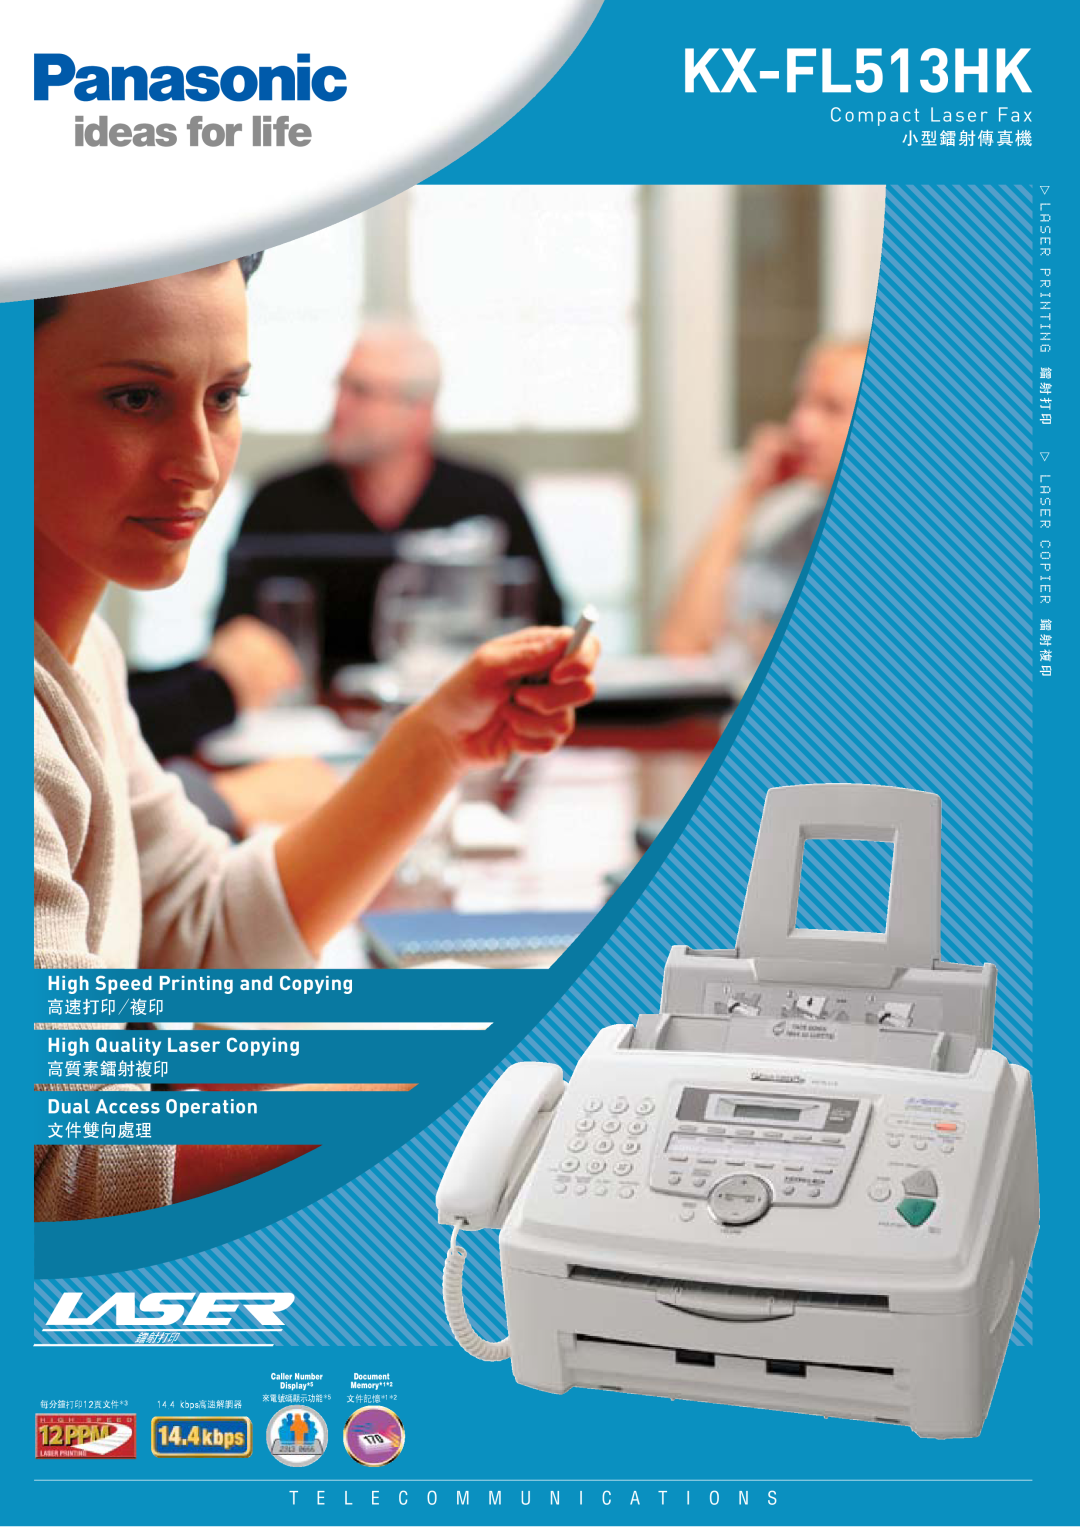 Panasonic KX-FL513HK manual 小 型 鐳 射 傳 真 機, 高速打印/複印, 高質素鐳射複印, 文件雙向處理, Compact Laser Fax, High Speed Printing and Copying 